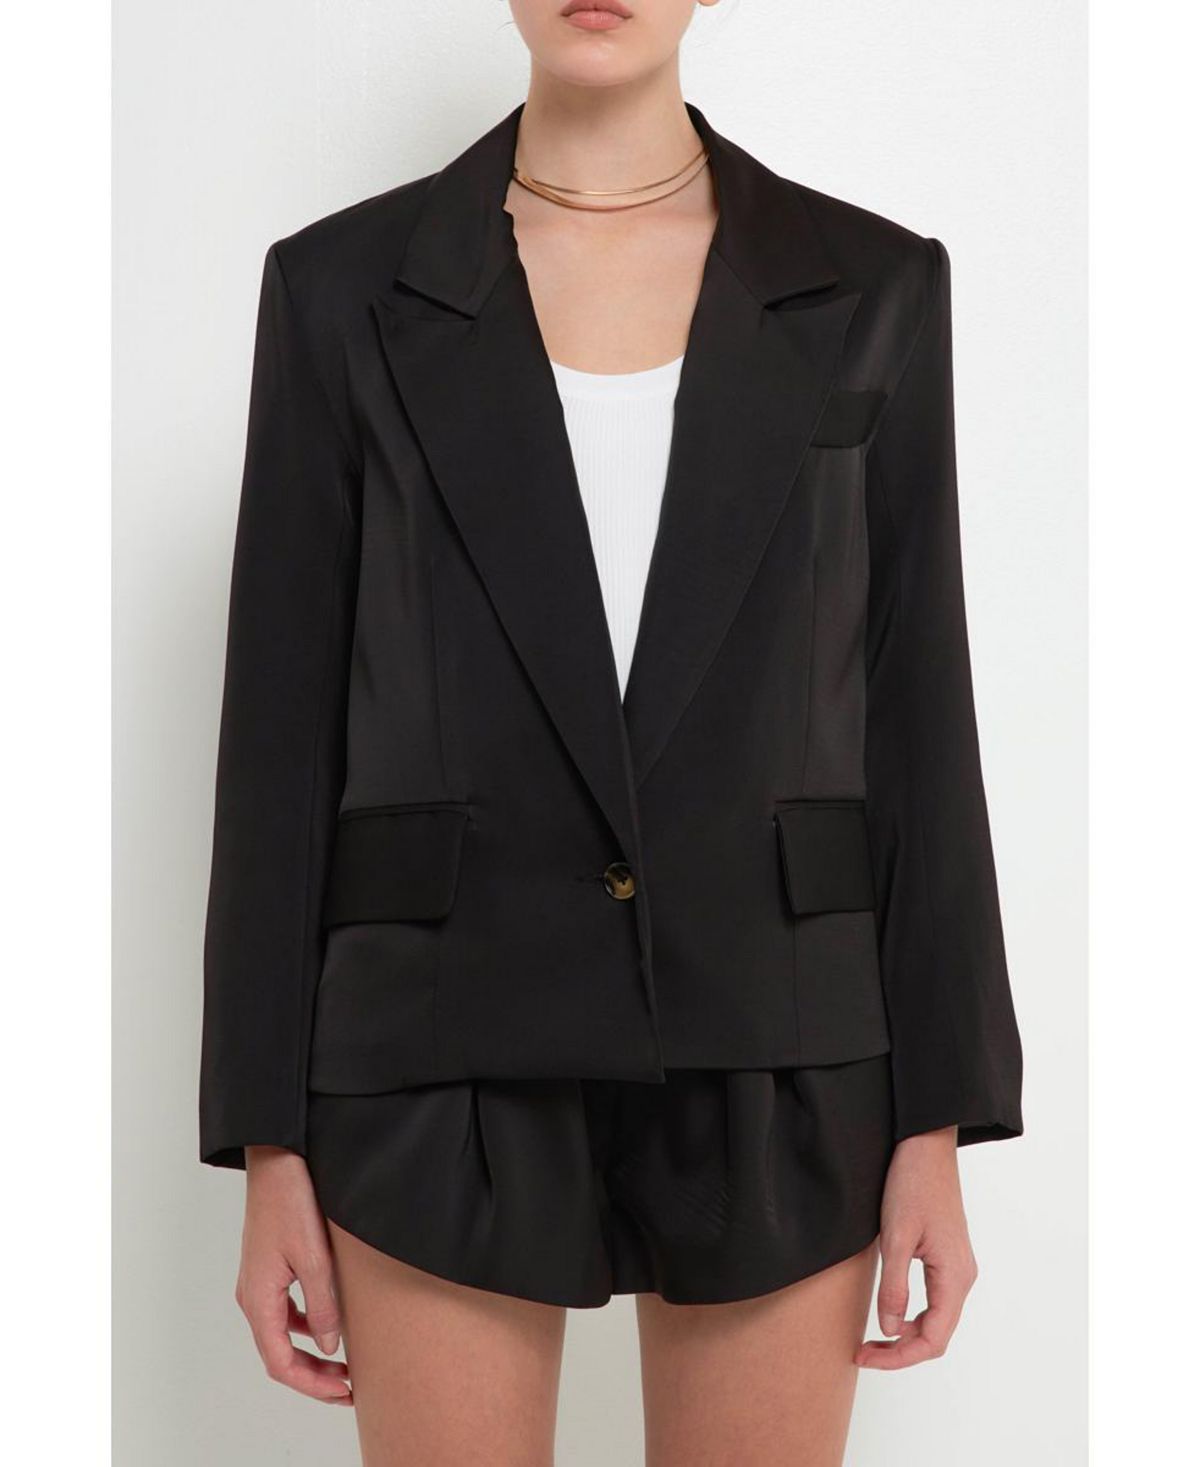 Женский атласный пиджак на одной пуговице Grey Lab, черный женский пиджак lux на одной пуговице calvin klein цвет charcoal